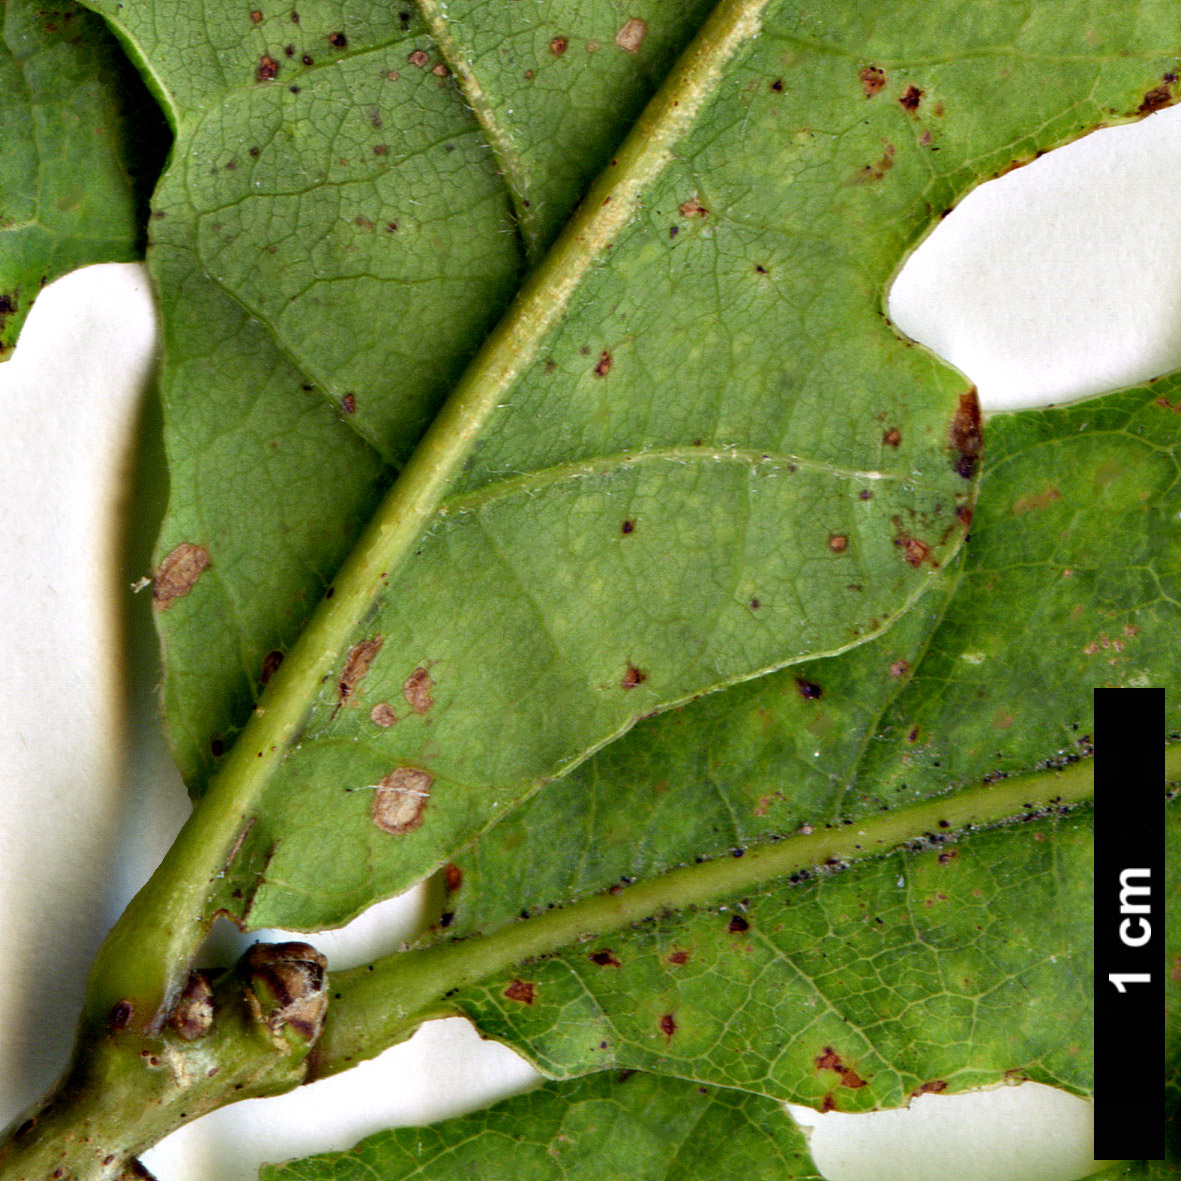 High resolution image: Family: Fagaceae - Genus: Quercus - Taxon: robur - SpeciesSub: Haas Group